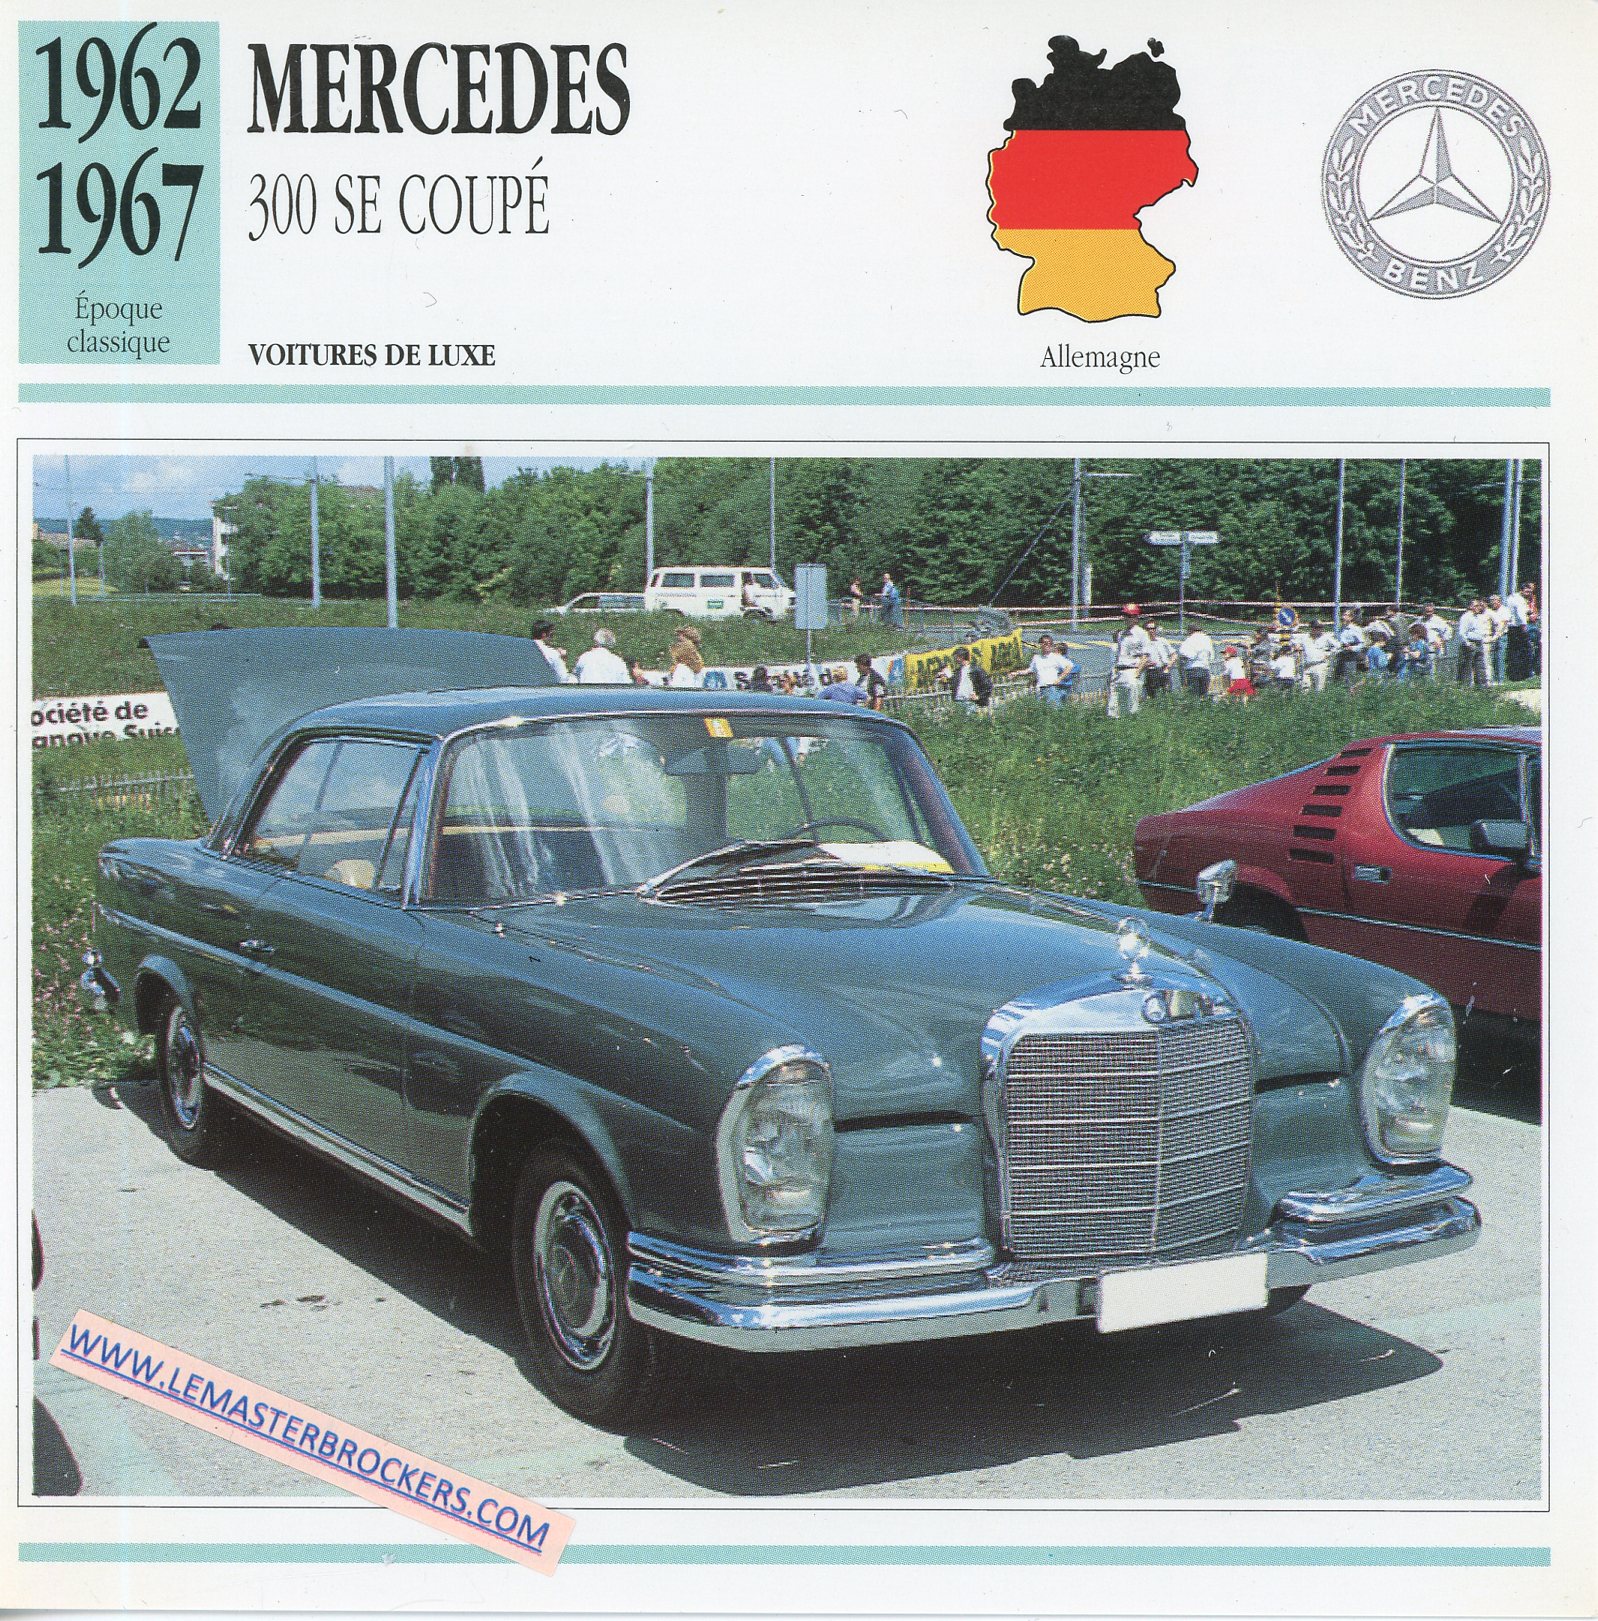 FICHE-AUTO-ATLAS-MERCEDES-300SE-coupé-1962-1967-LEMASTERBROCKERS-CARD-CARS